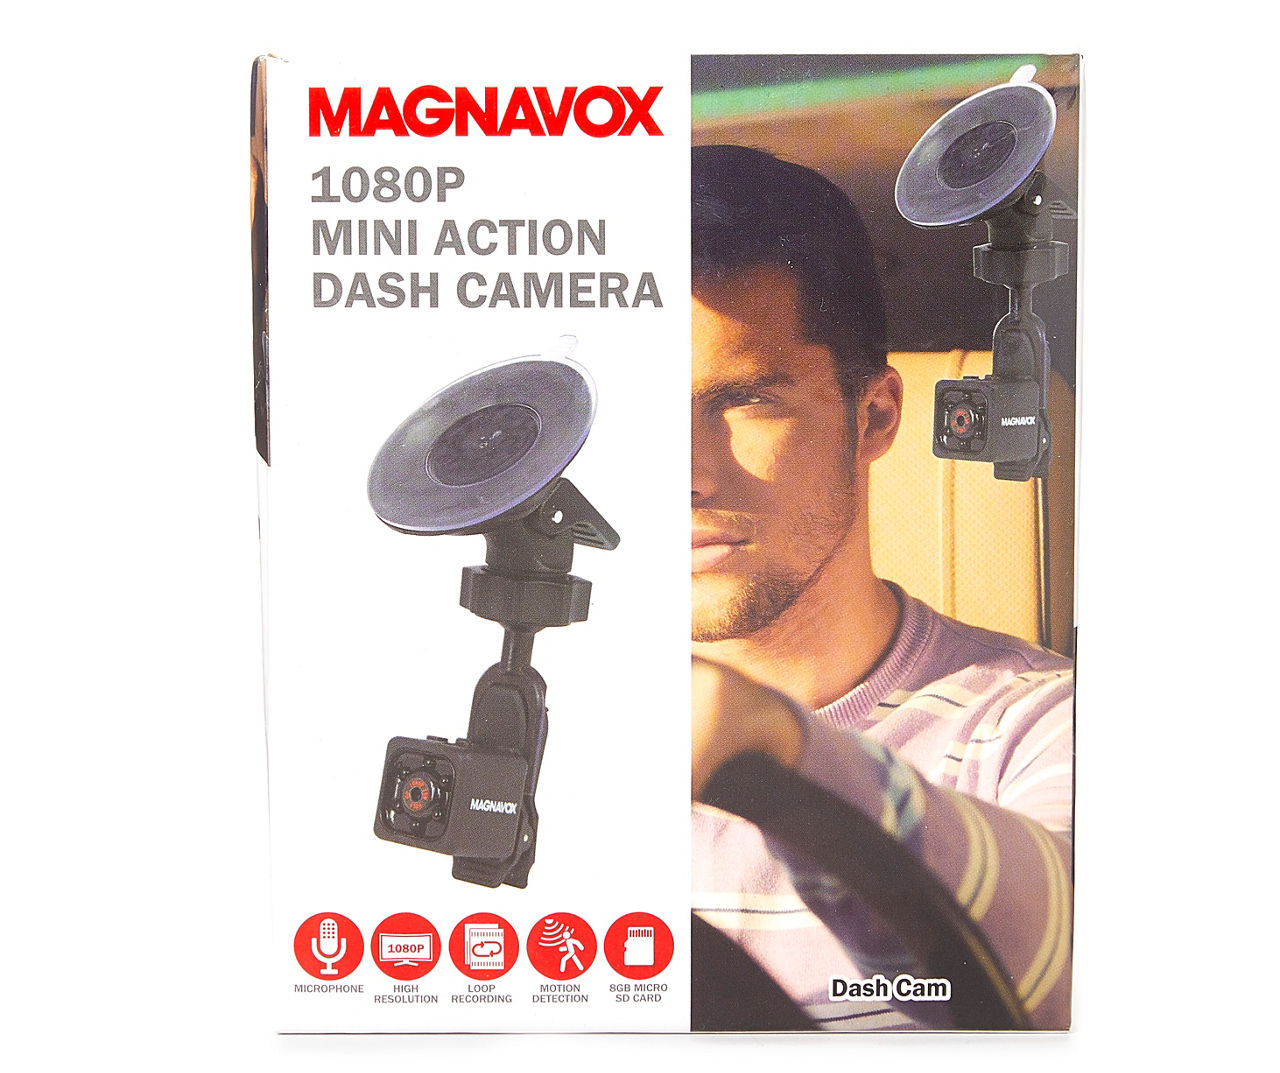 Magnavox 1080p Mini Action Dash Camera